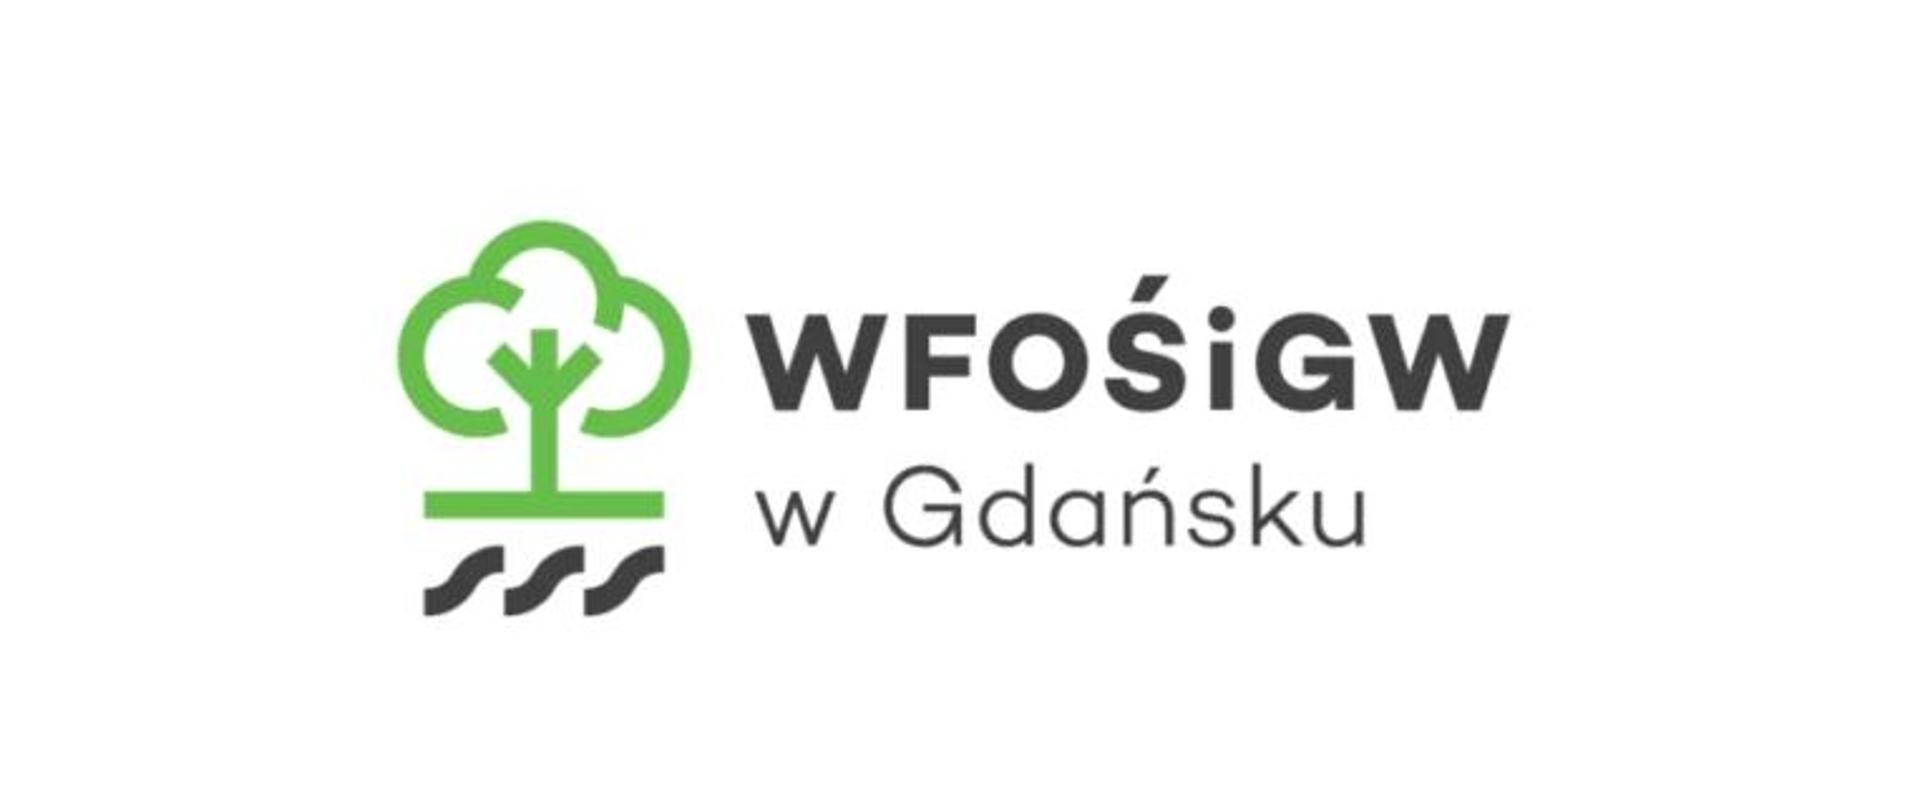 Zdjęcie przedstawia logo WFOŚiGW w Gdańsku, symbol zielonego drzewa z napisem po prawej stronie.